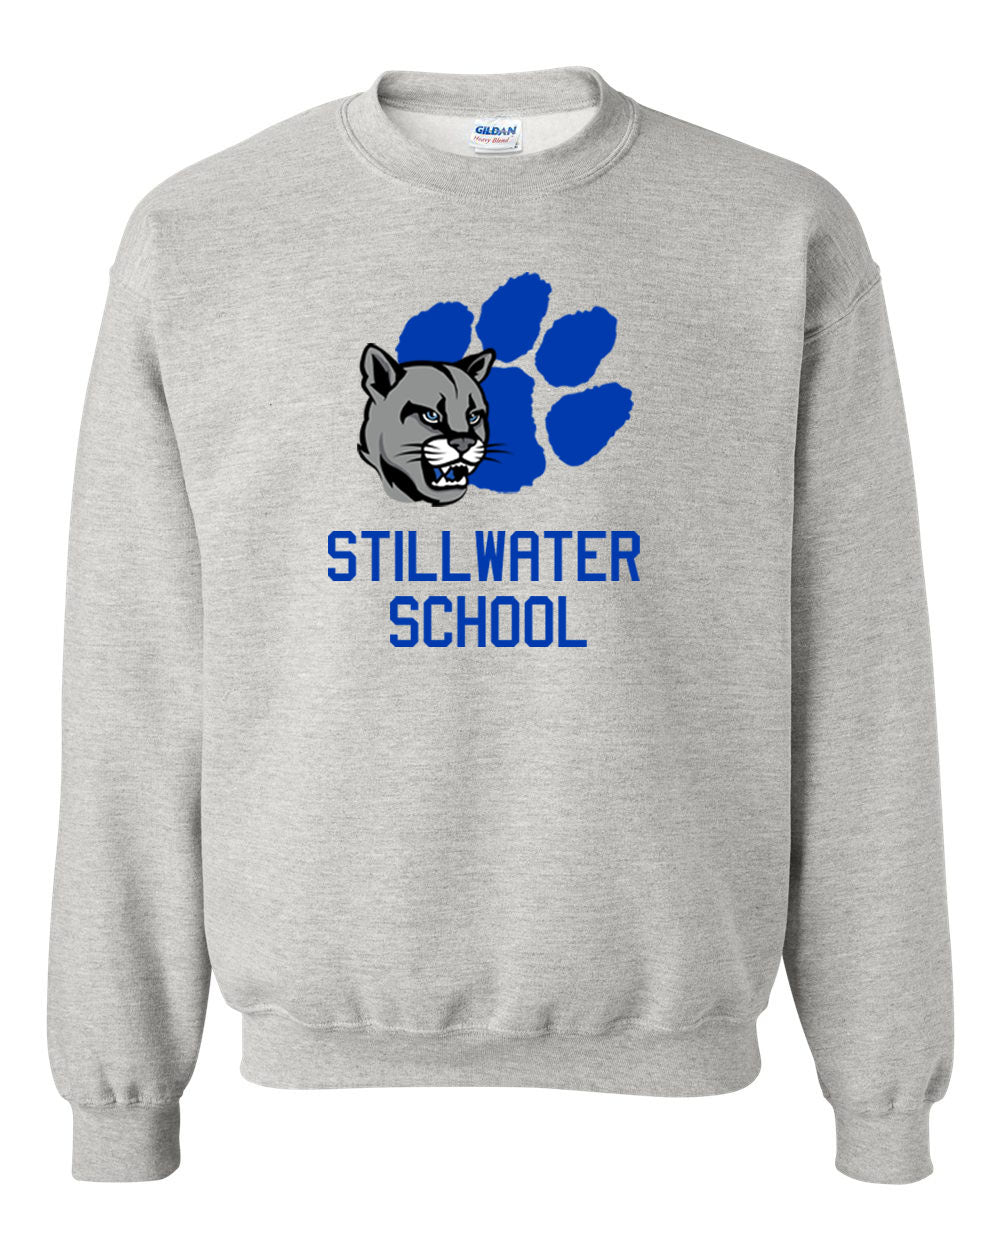 Stillwater Design 8 non hooded sweatshirt